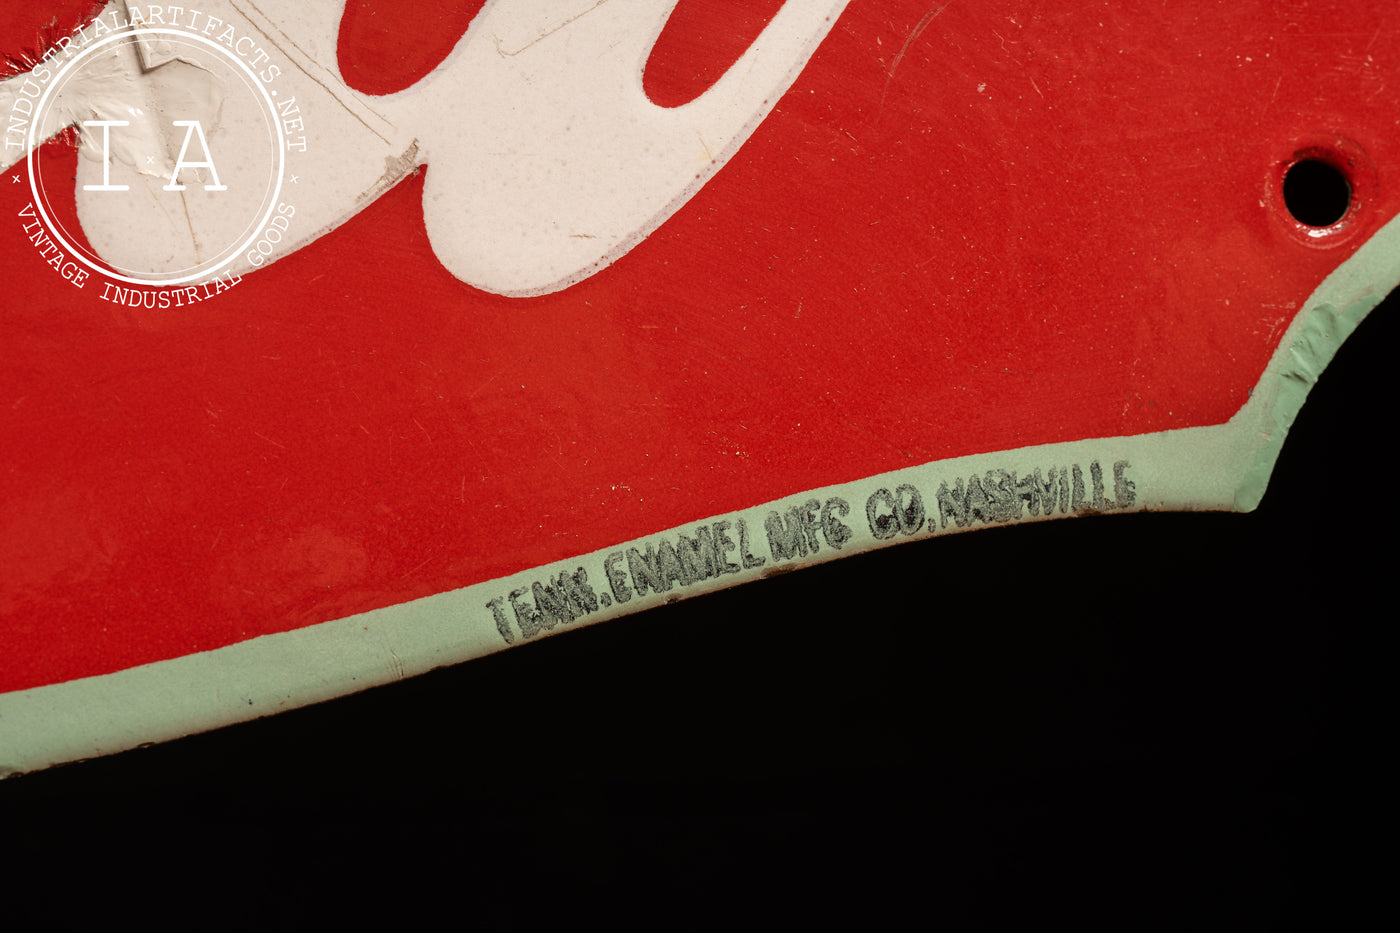 Vintage Single-Sided Porcelain Coca-Cola Sign